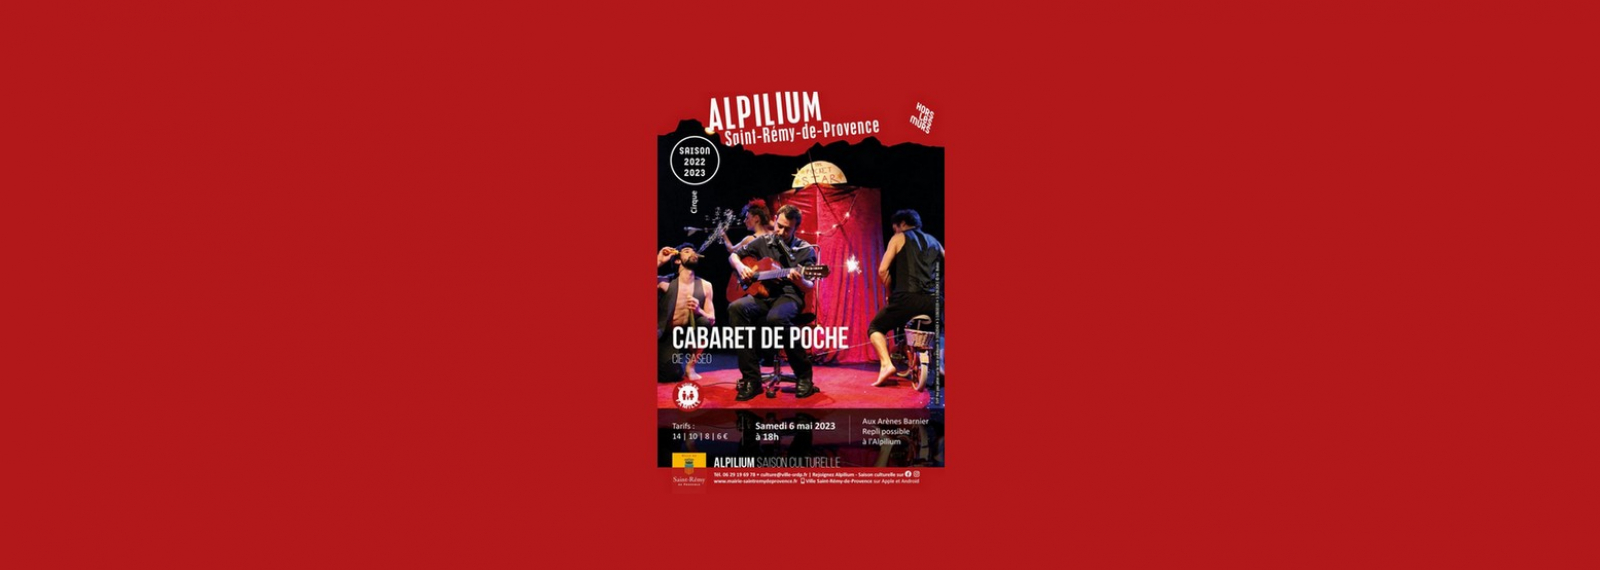 Alpilium : Cabaret de poche